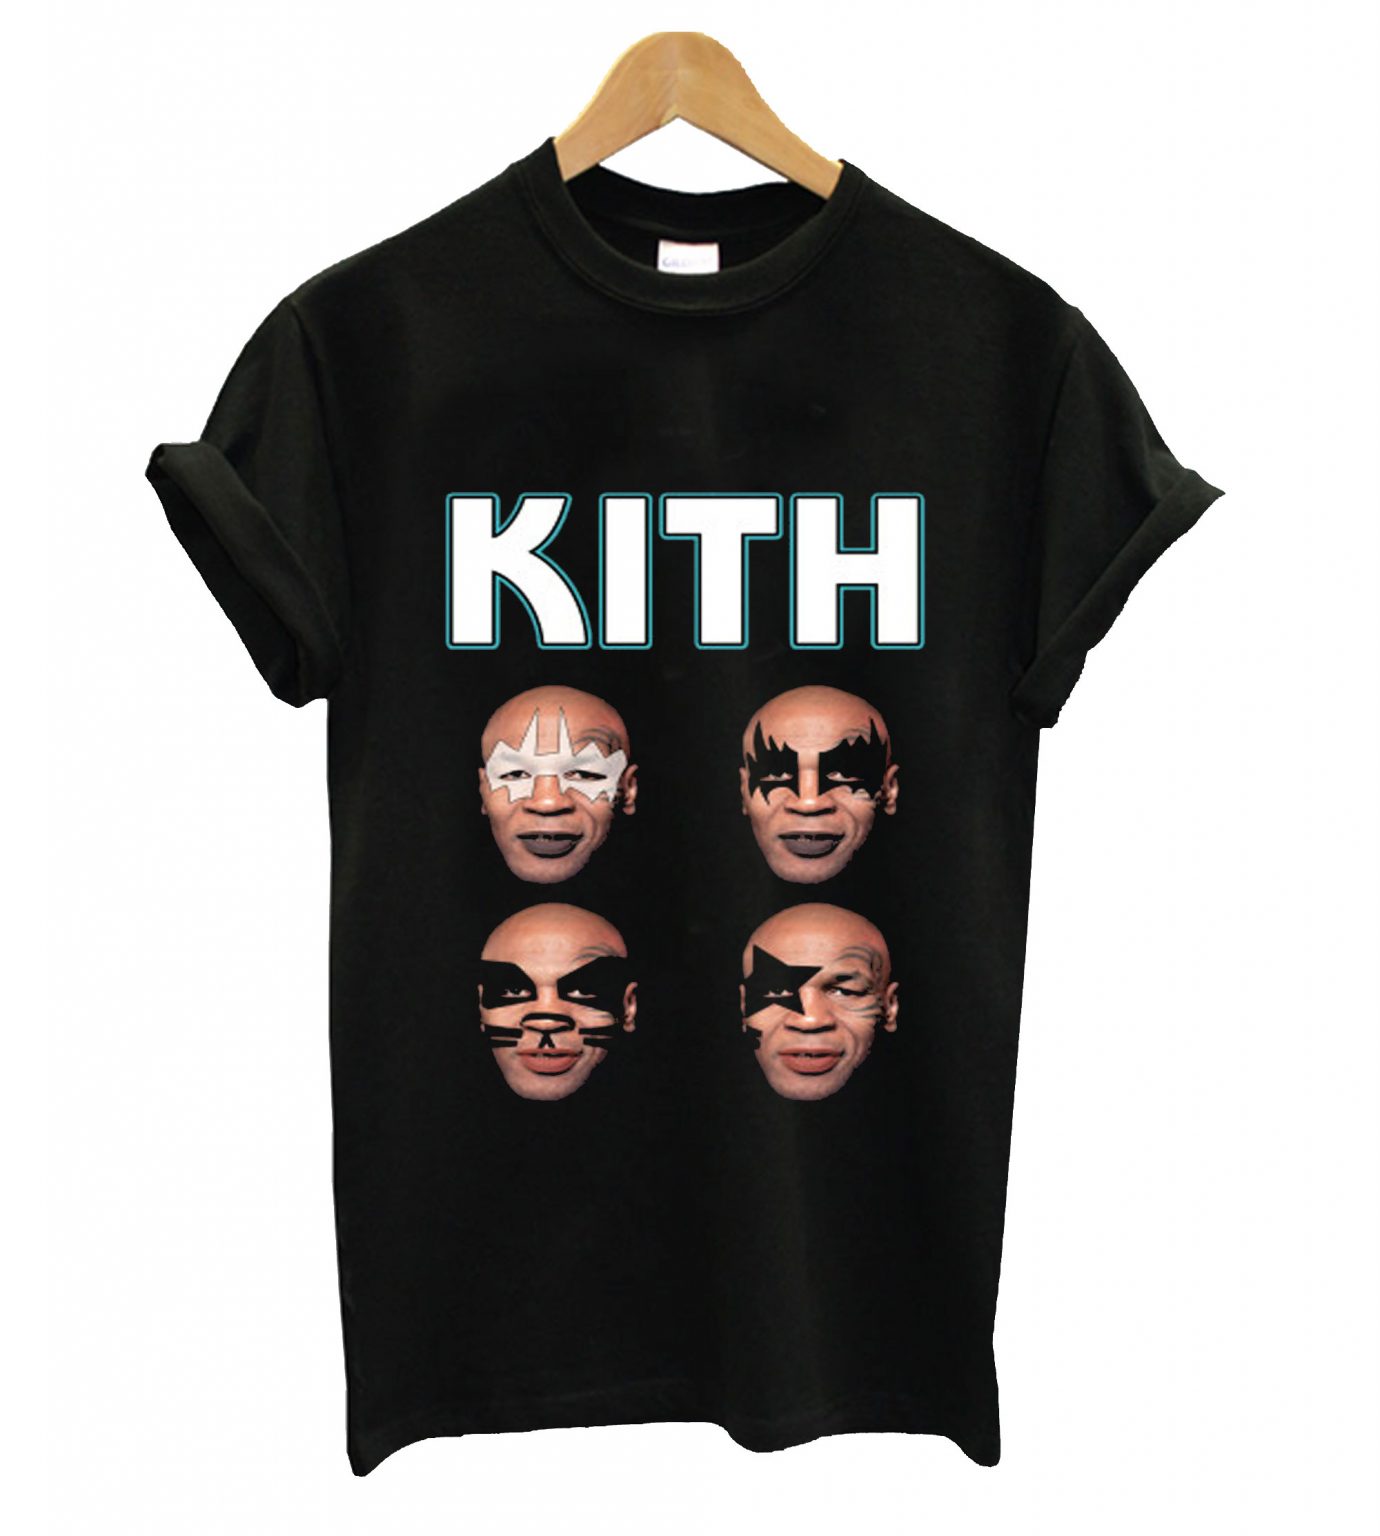 Kith t-shirt